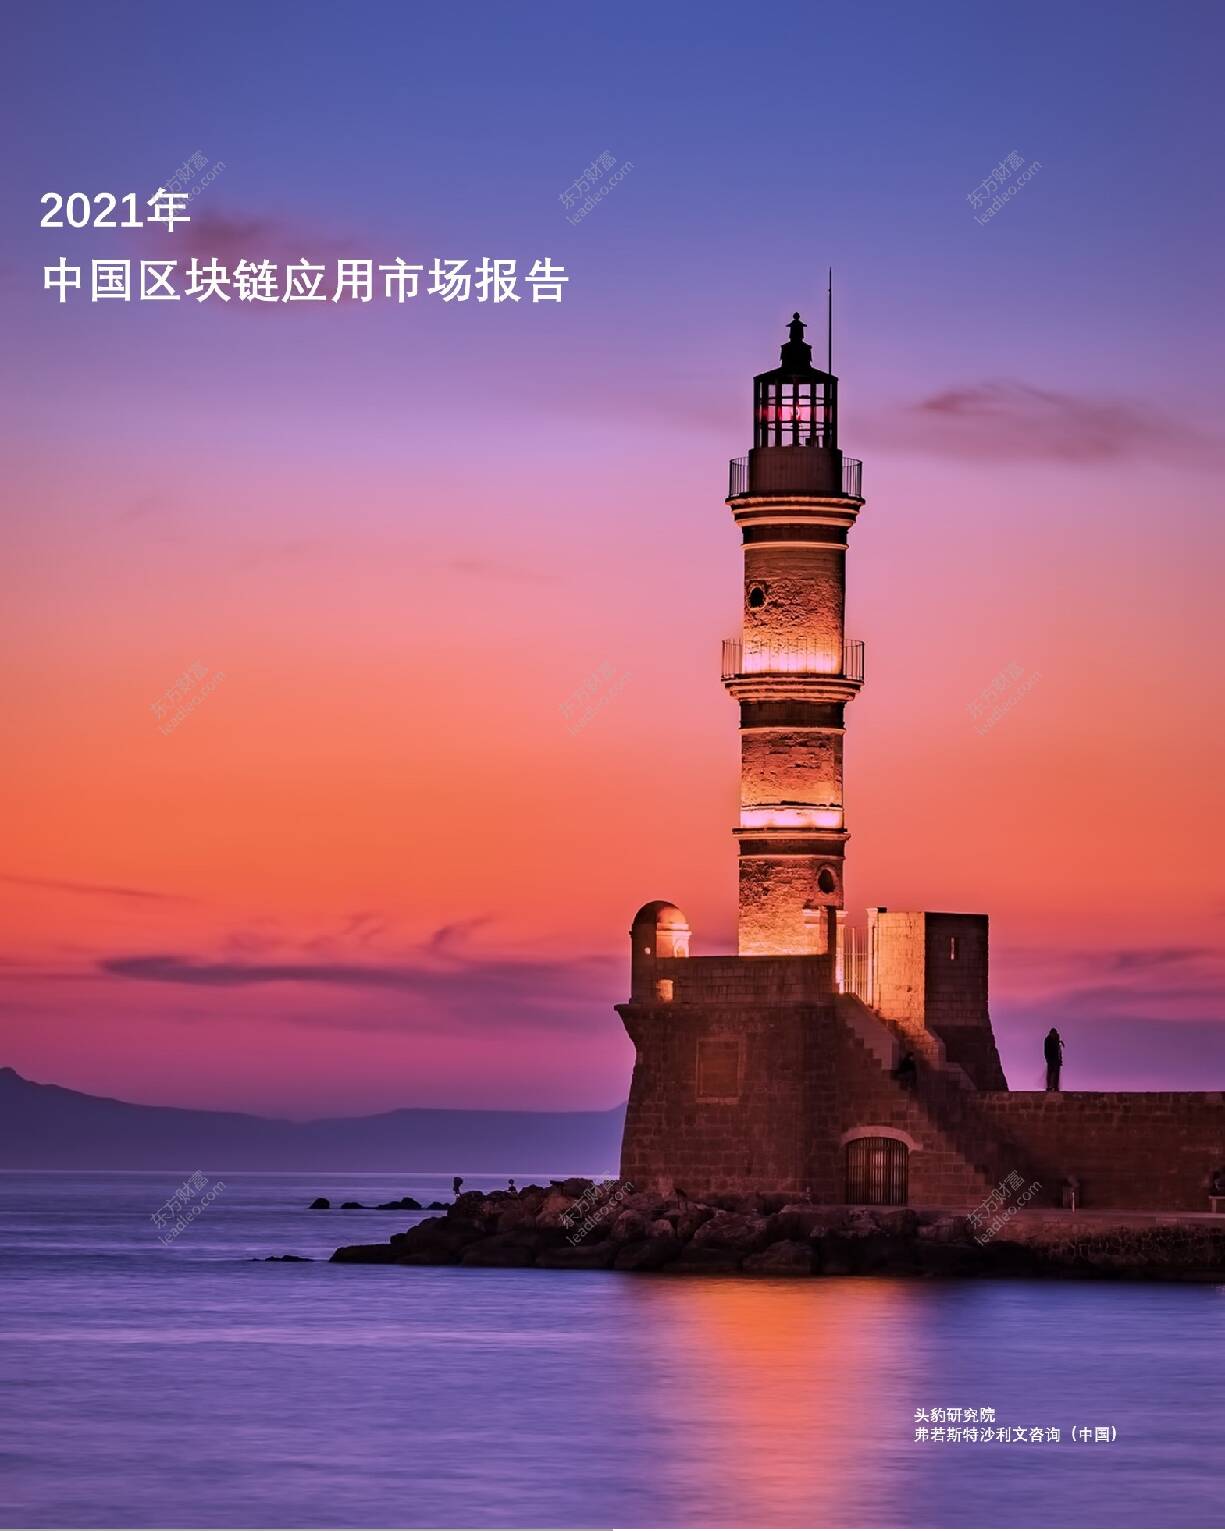 2021年中国区块链应用市场报告 头豹研究院 2021-09-27